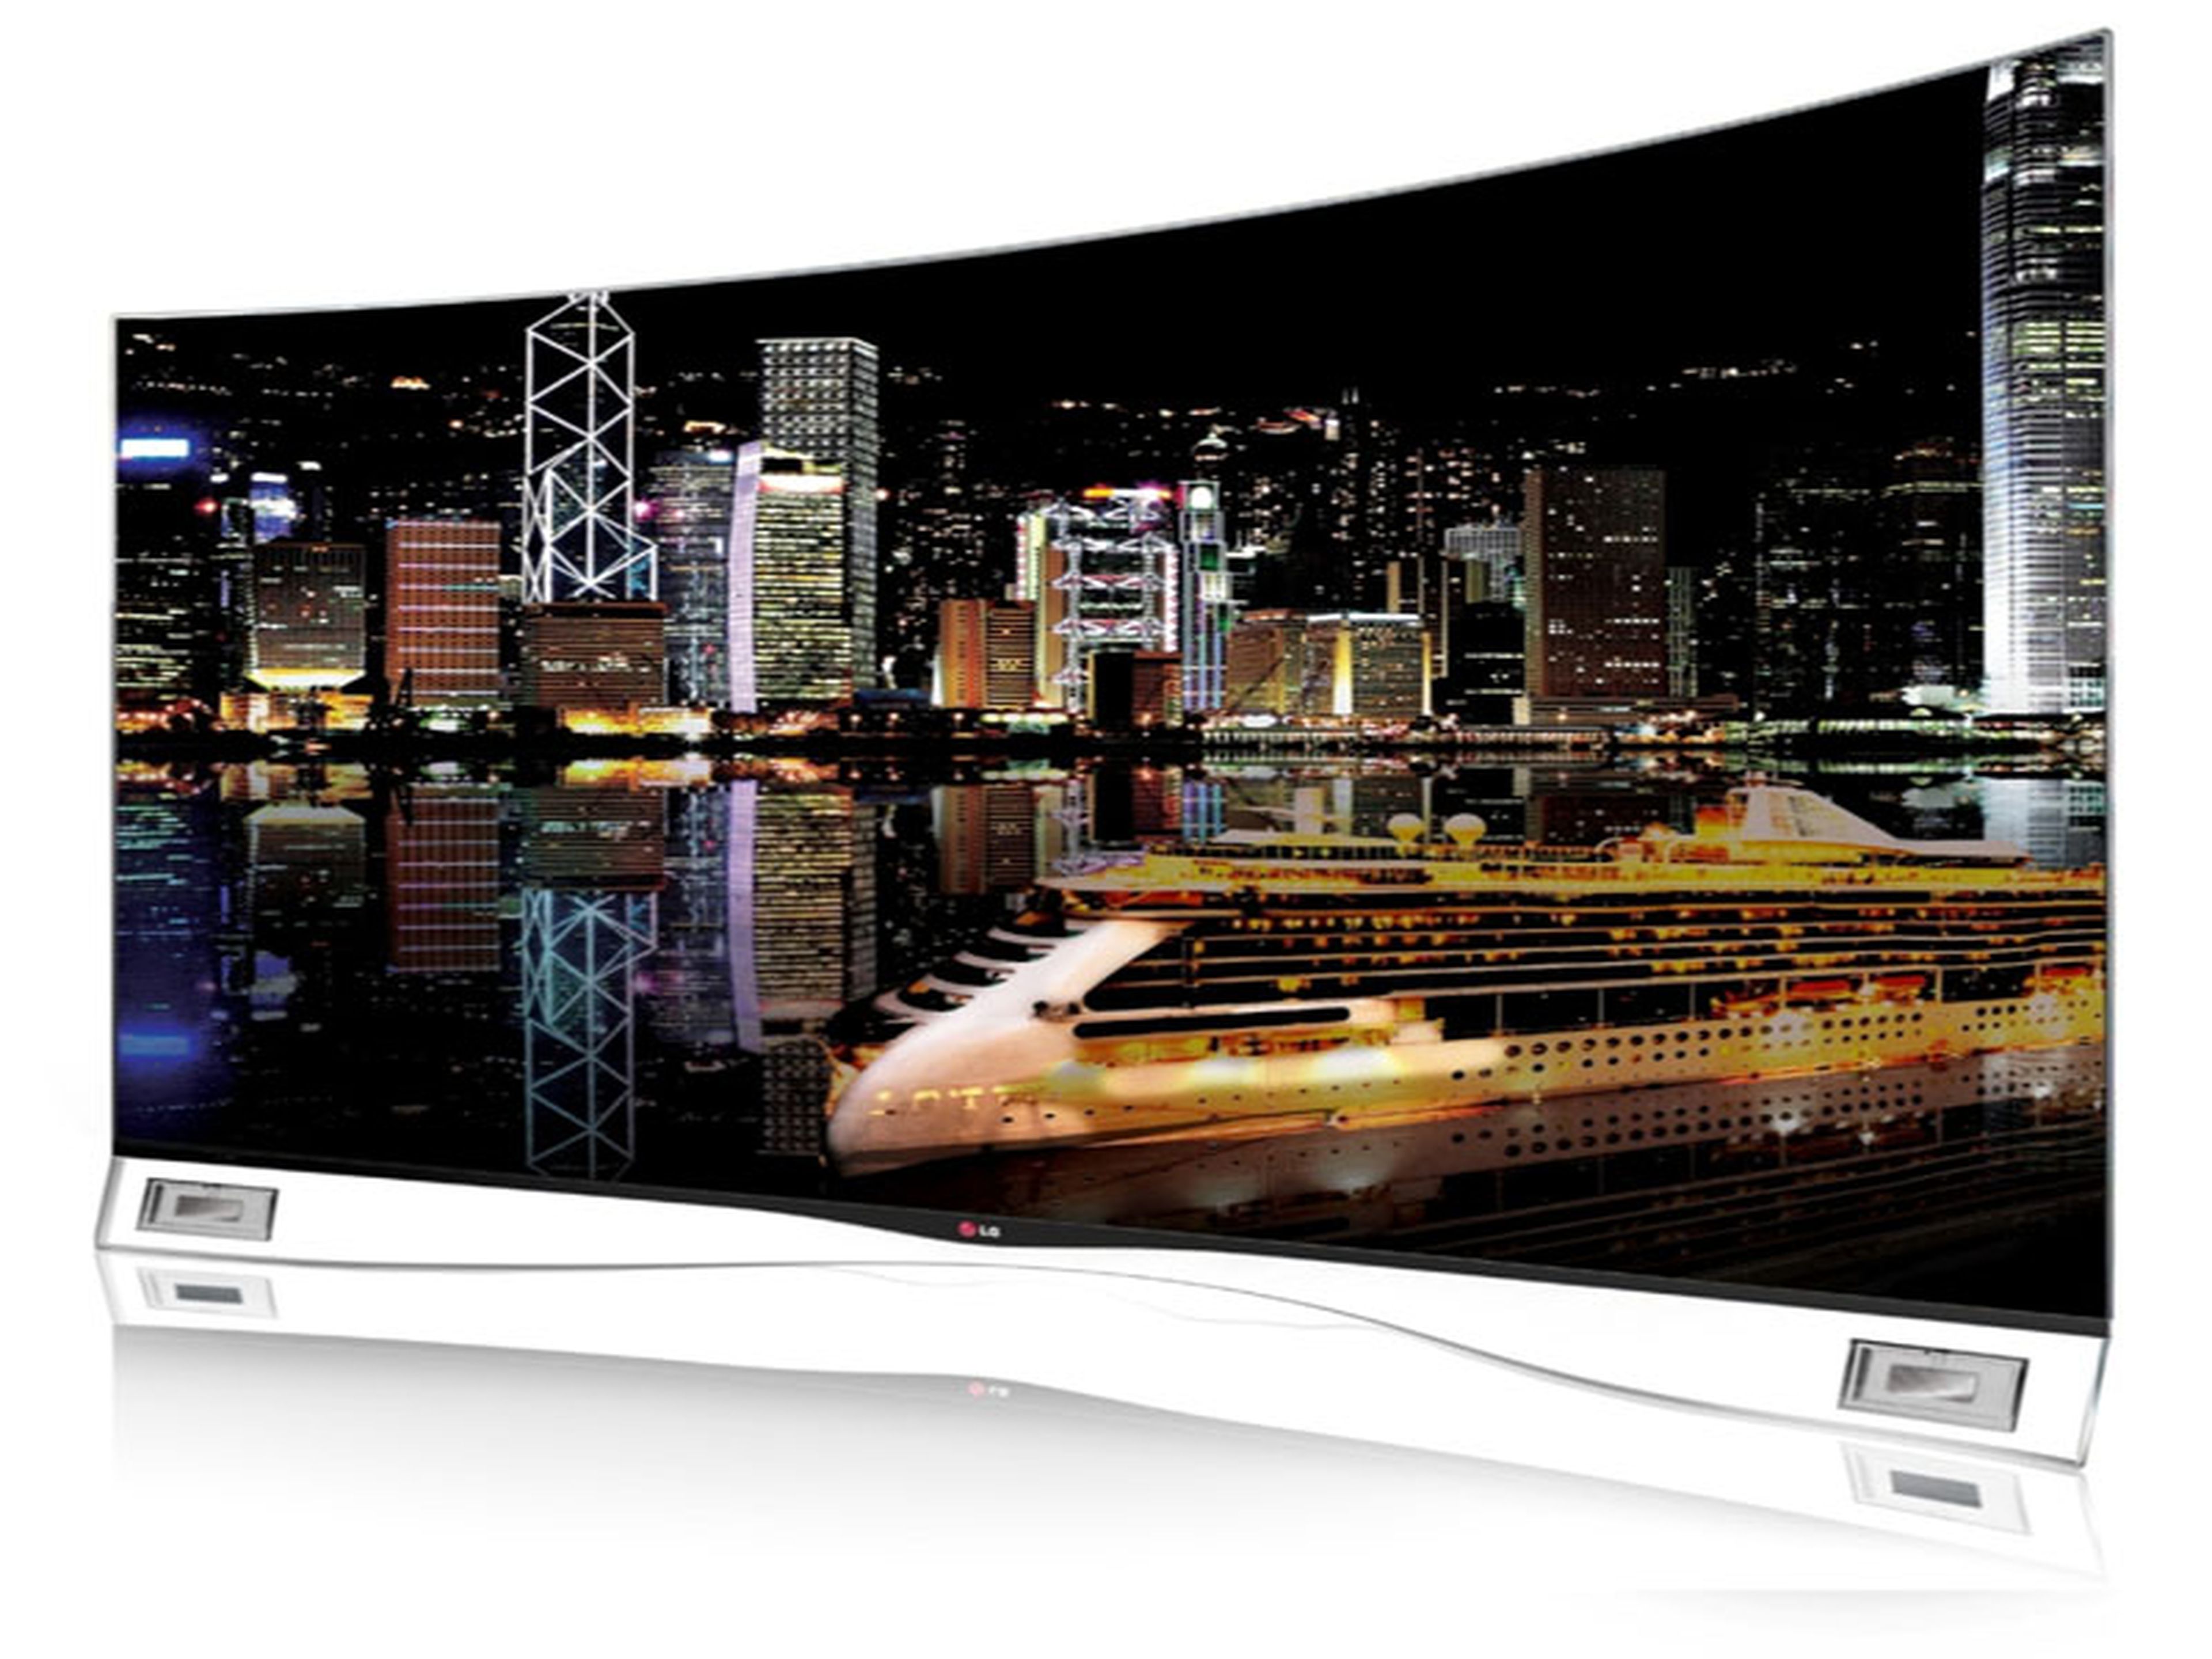 LG presenta su nueva gama de televisores 4K en el IFA 2013